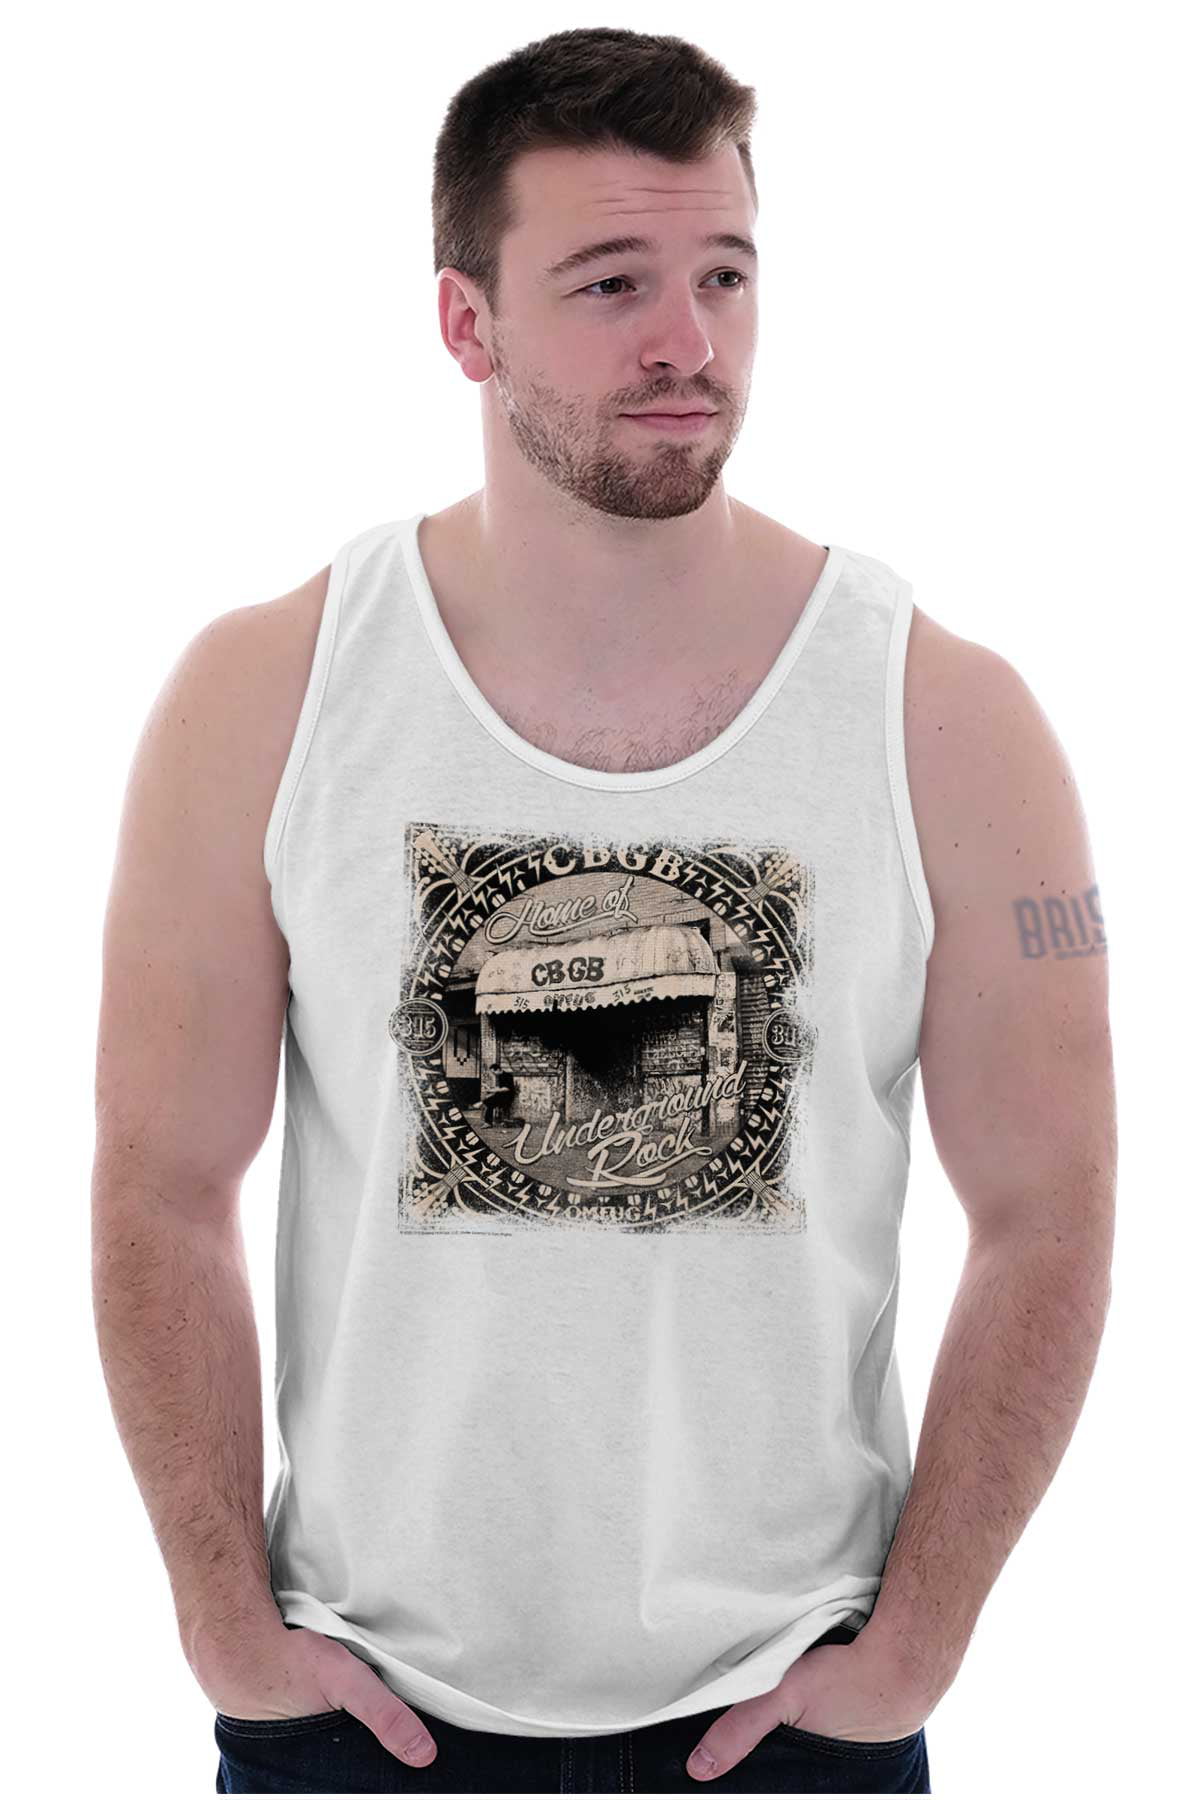 CBGB Home Of Underground Rock Rock Tank Top T Shirts Men Women Brisco ...